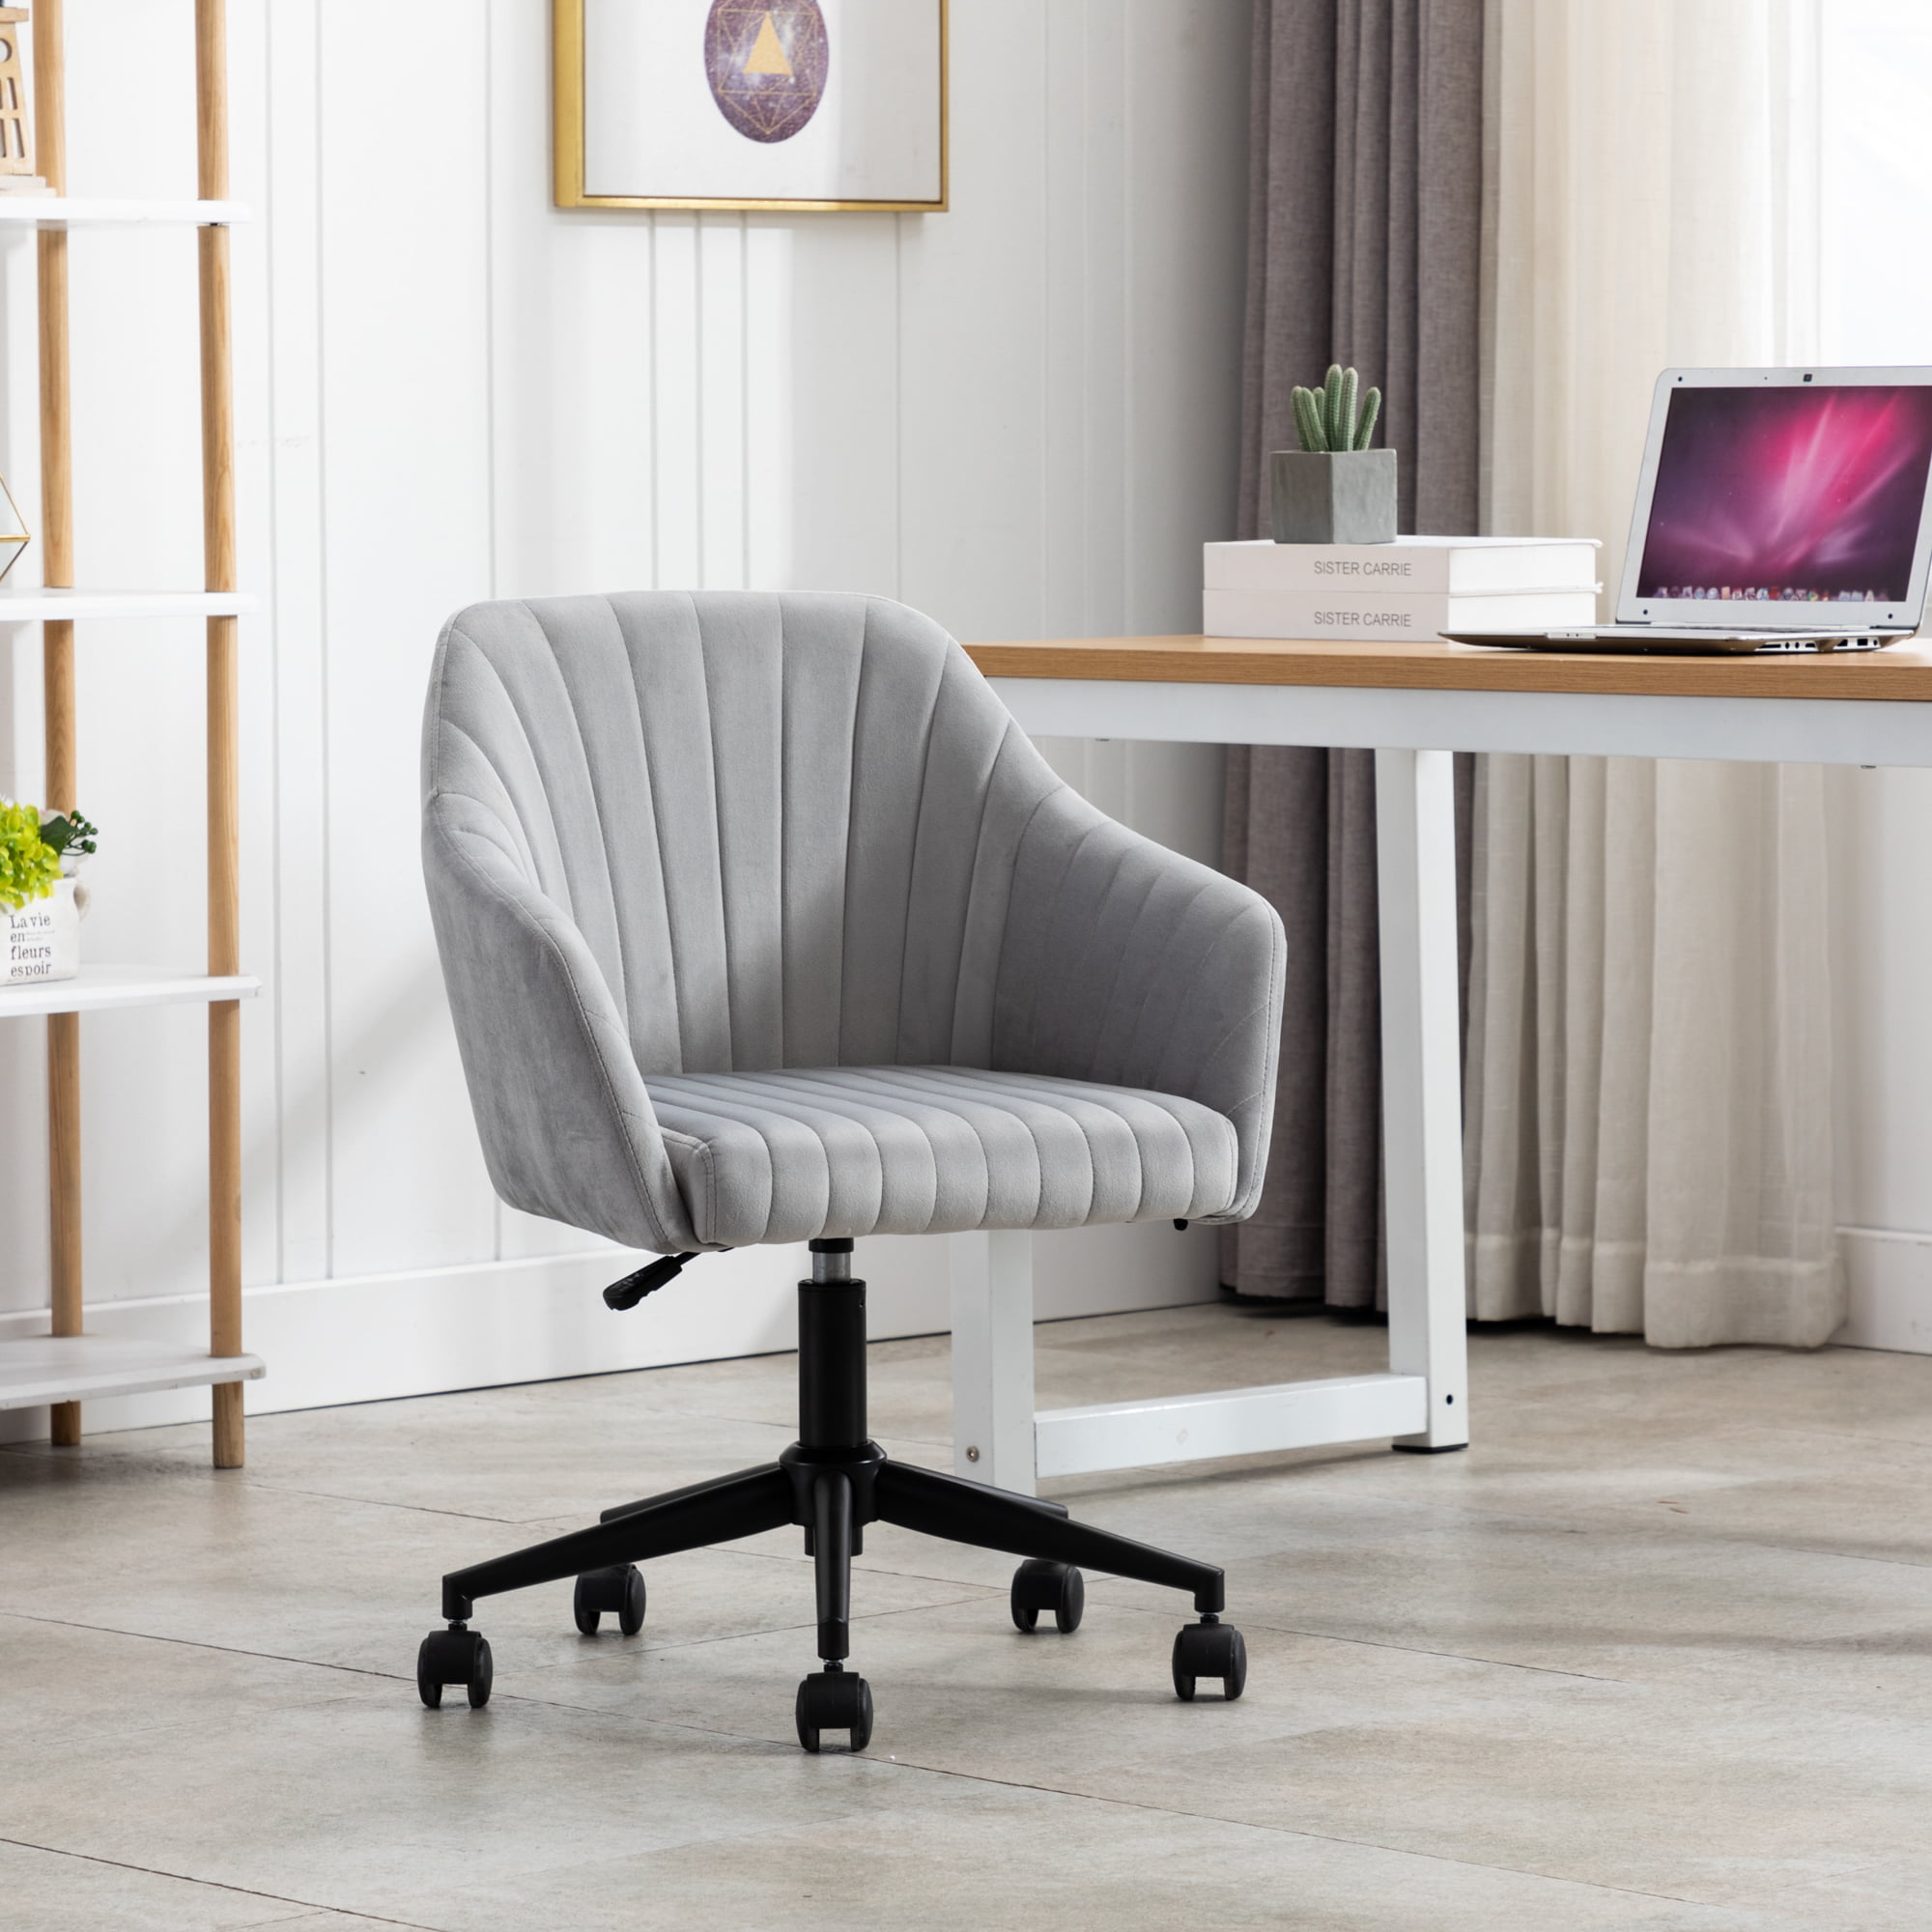 Swivel Velvet Office Chair Home Computer Desk Chair Ergonomic Adjustable Hight 